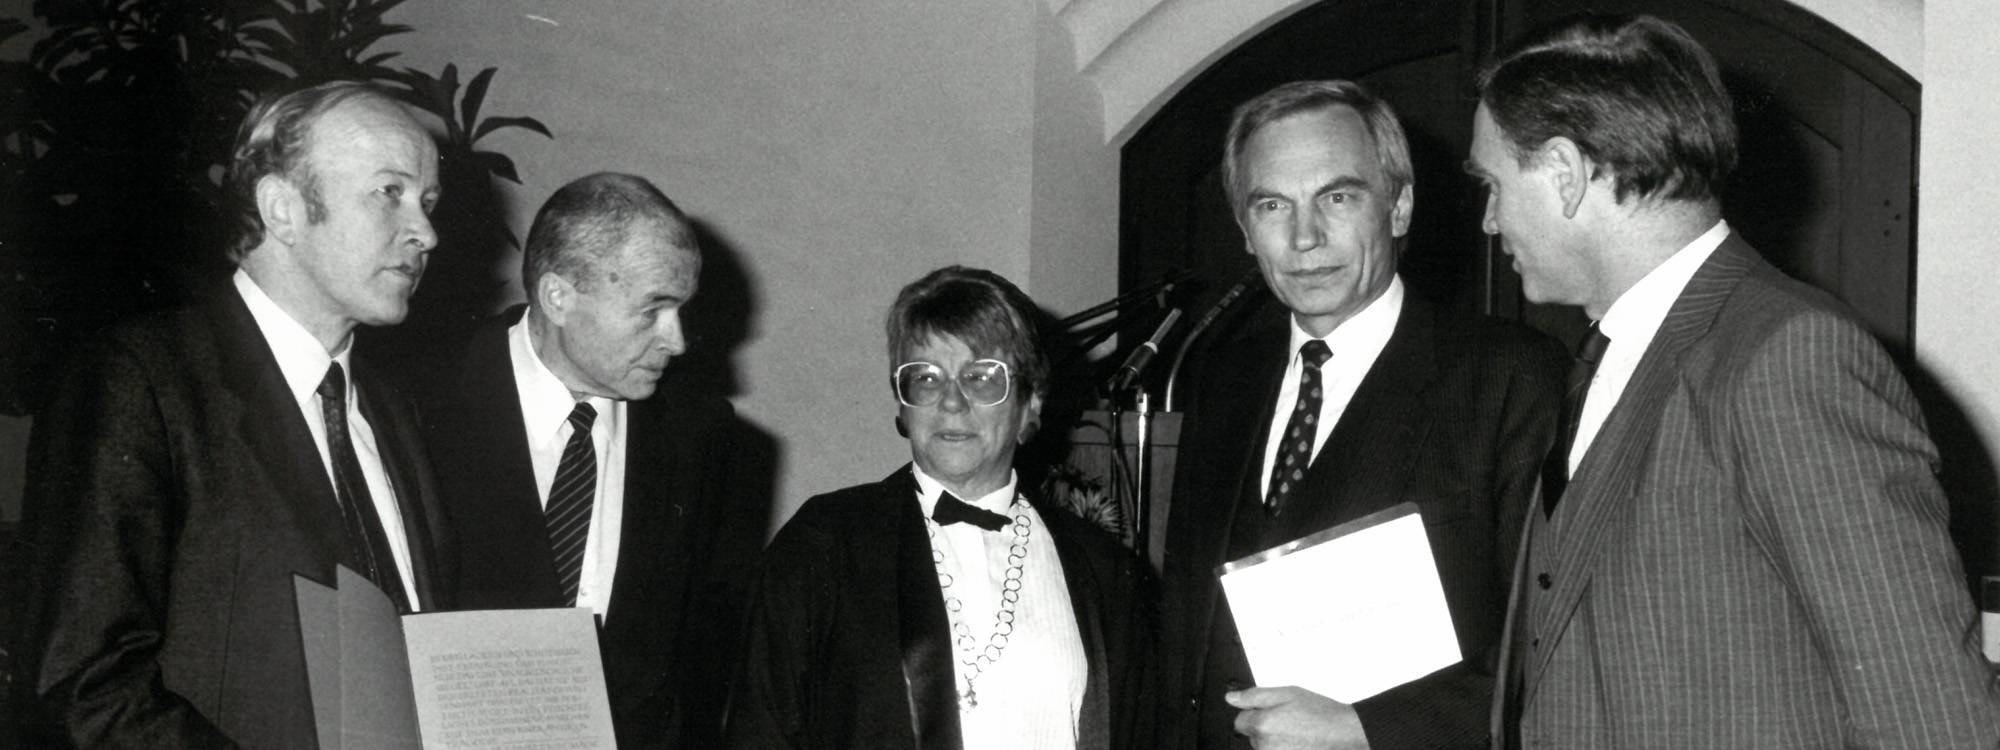 Geschwister Scholl Preis 1986 | Header | Preisübergabe